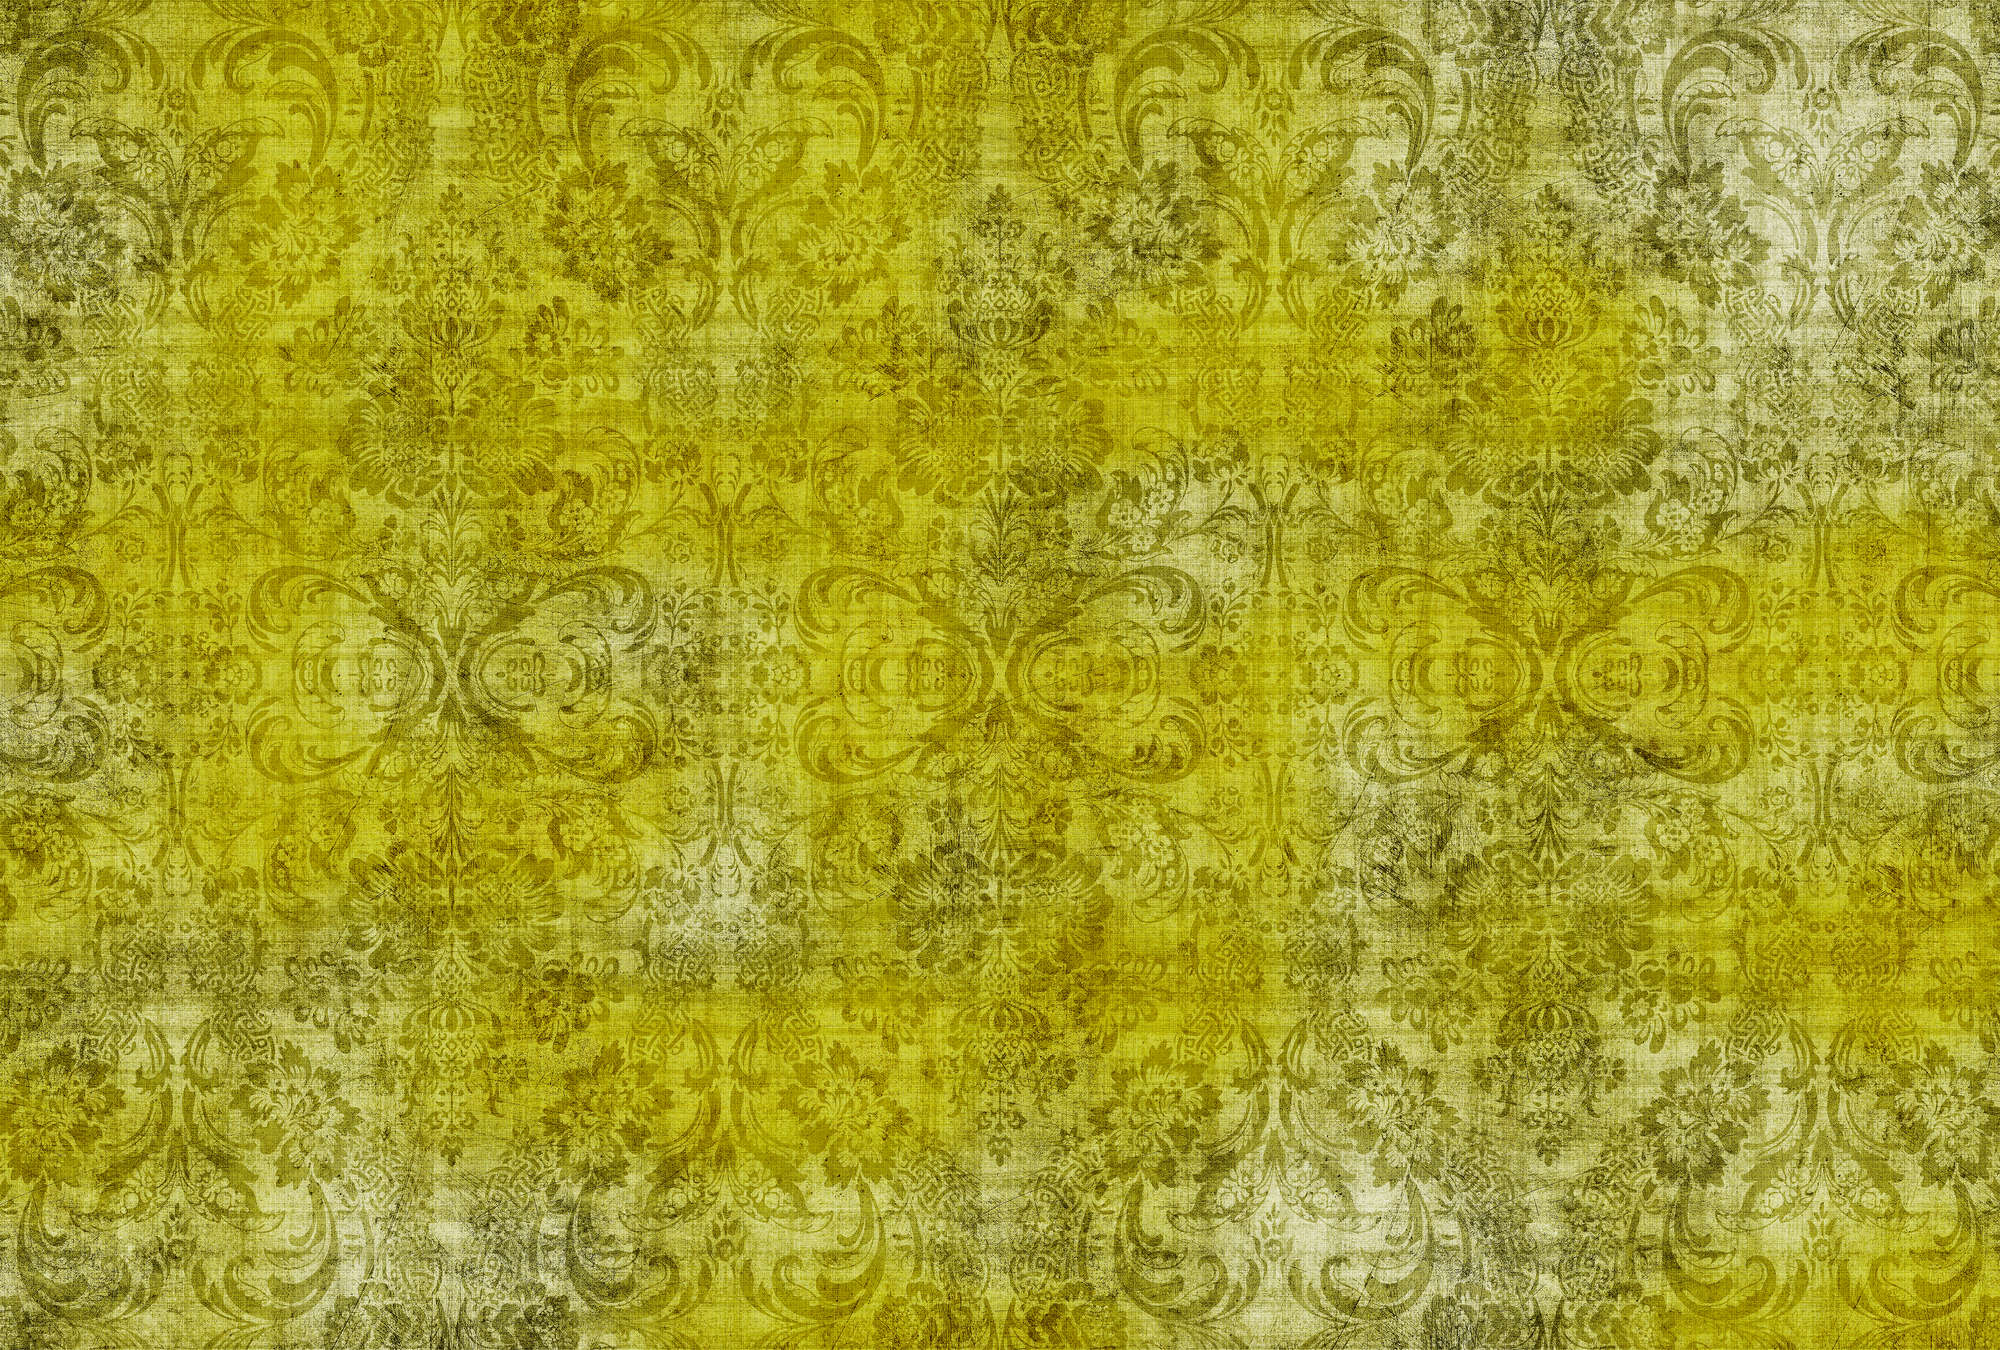             Oud damast 1 - Ornamenten op geel-motief fotobehang in natuurlijke linnenstructuur - Geel | Mat glad vlies
        